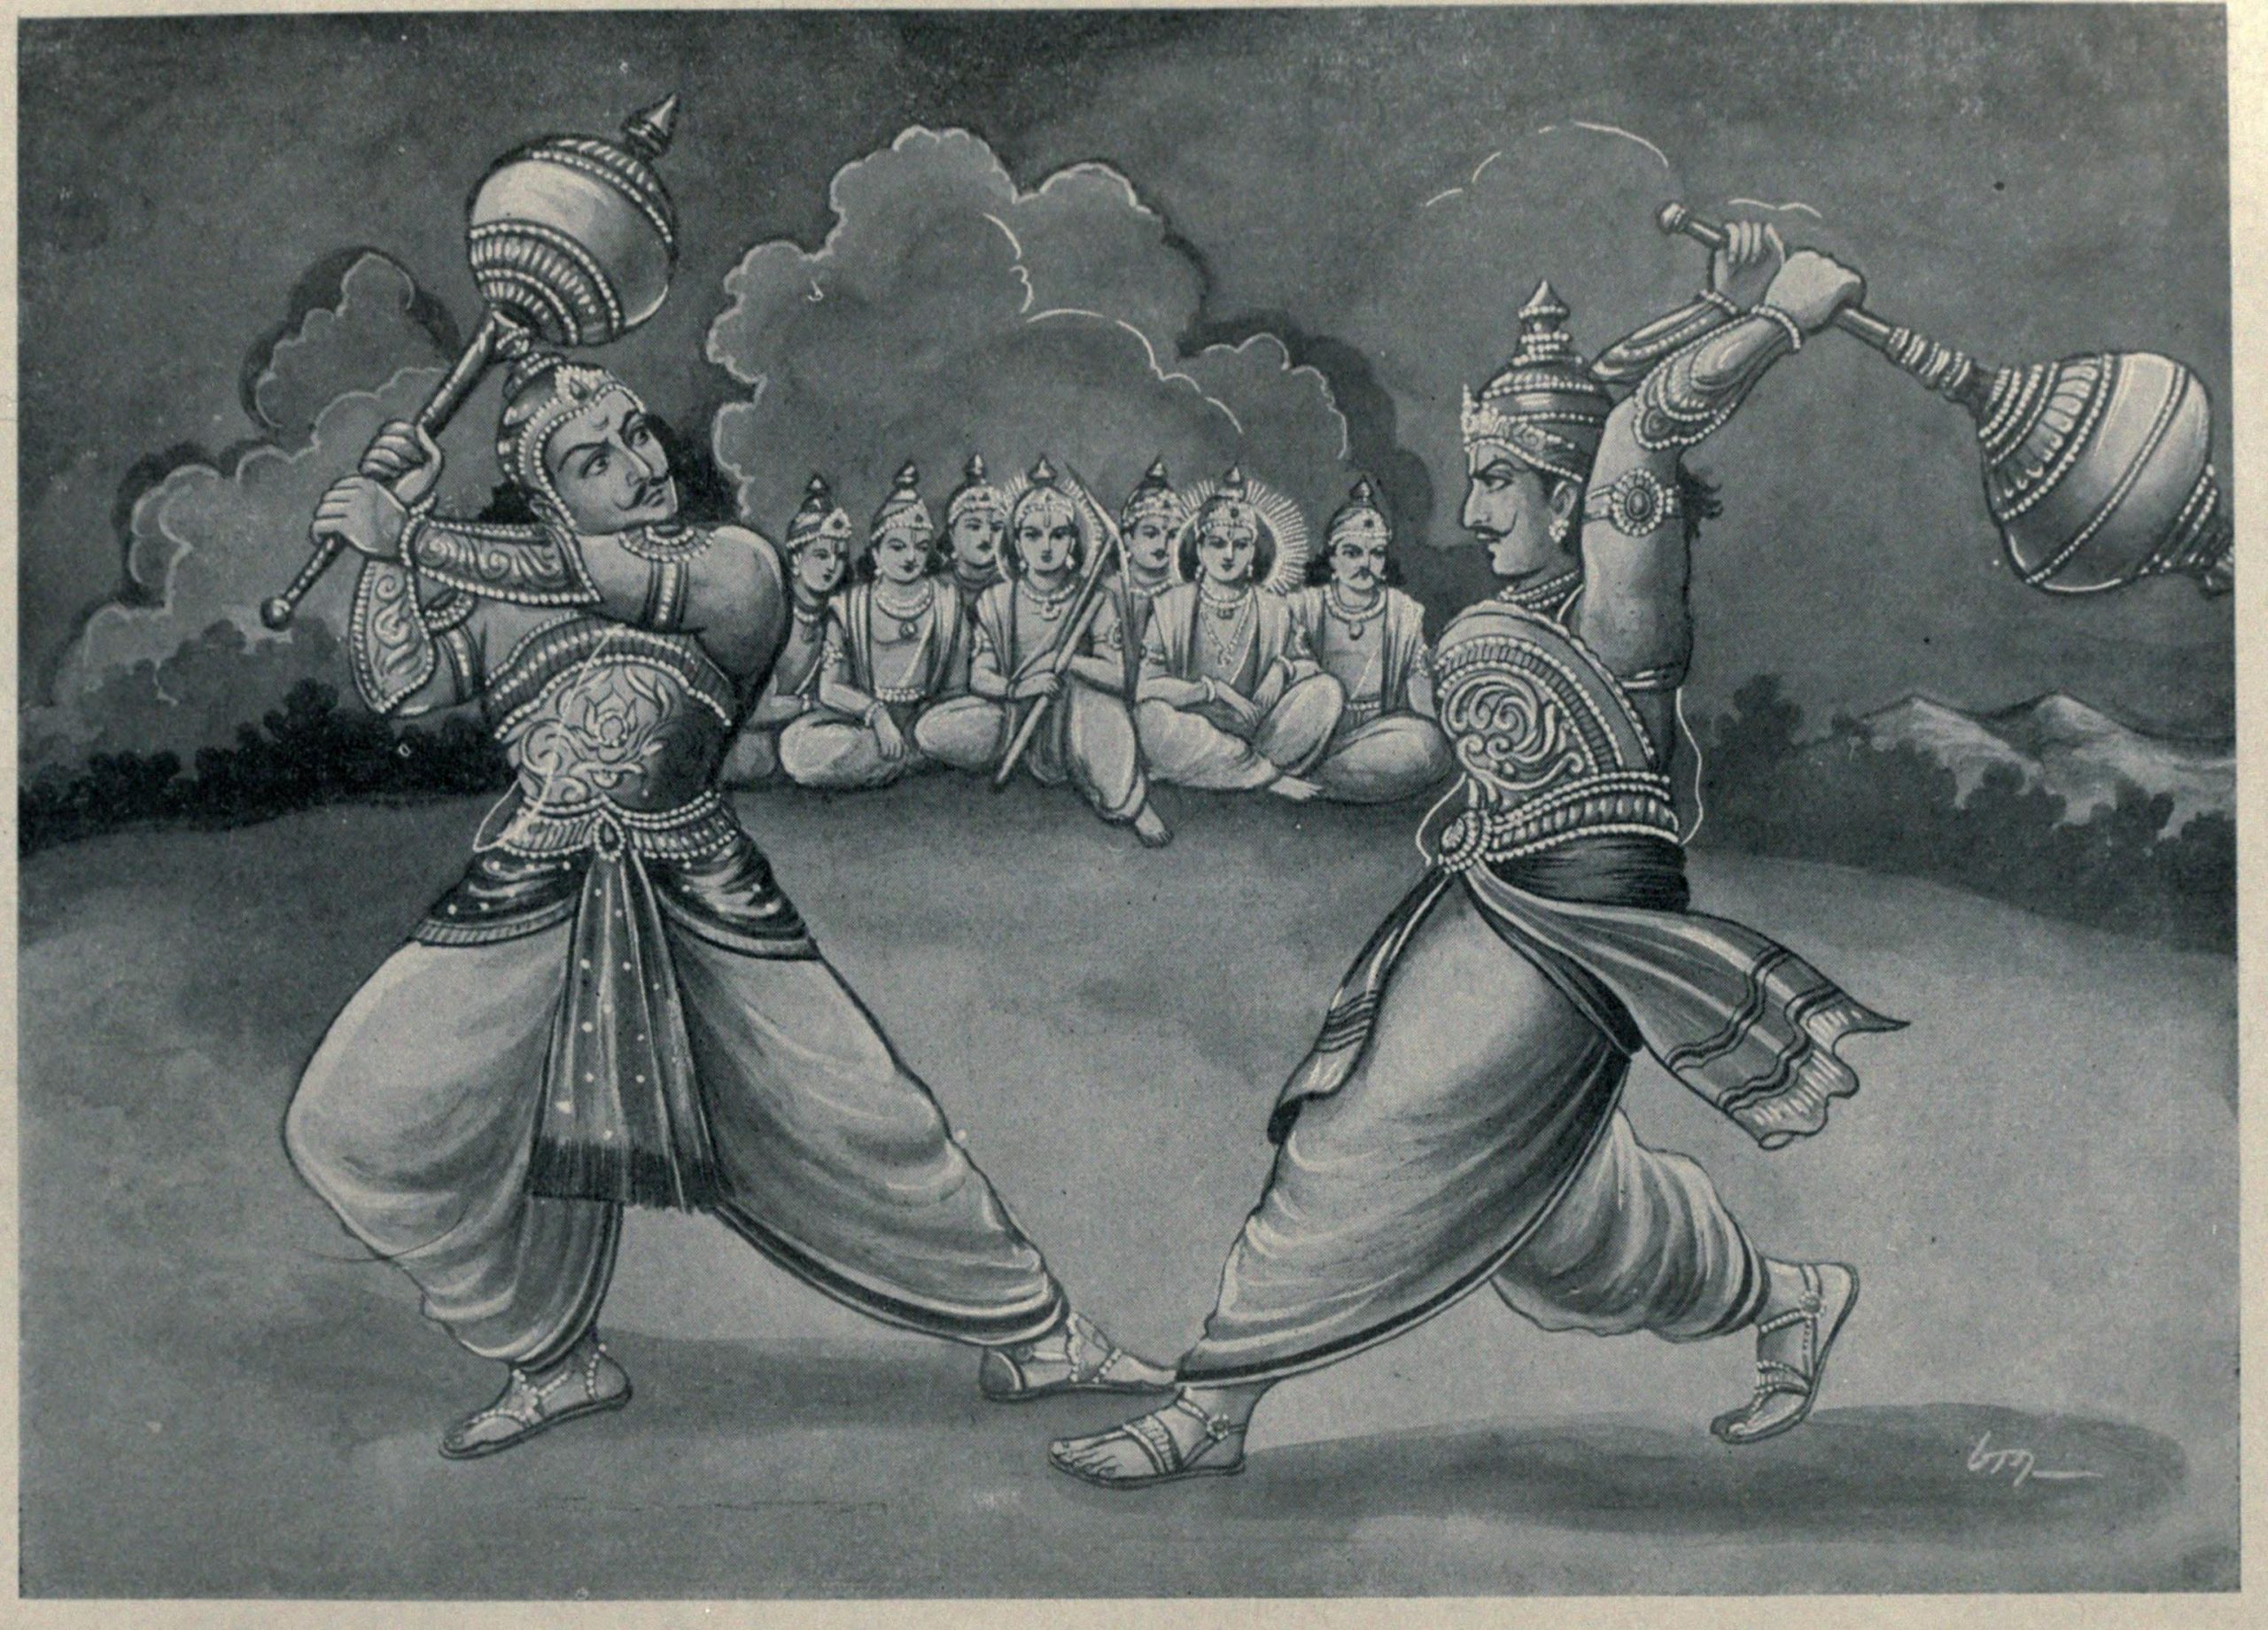 duryodhana and bhima duel